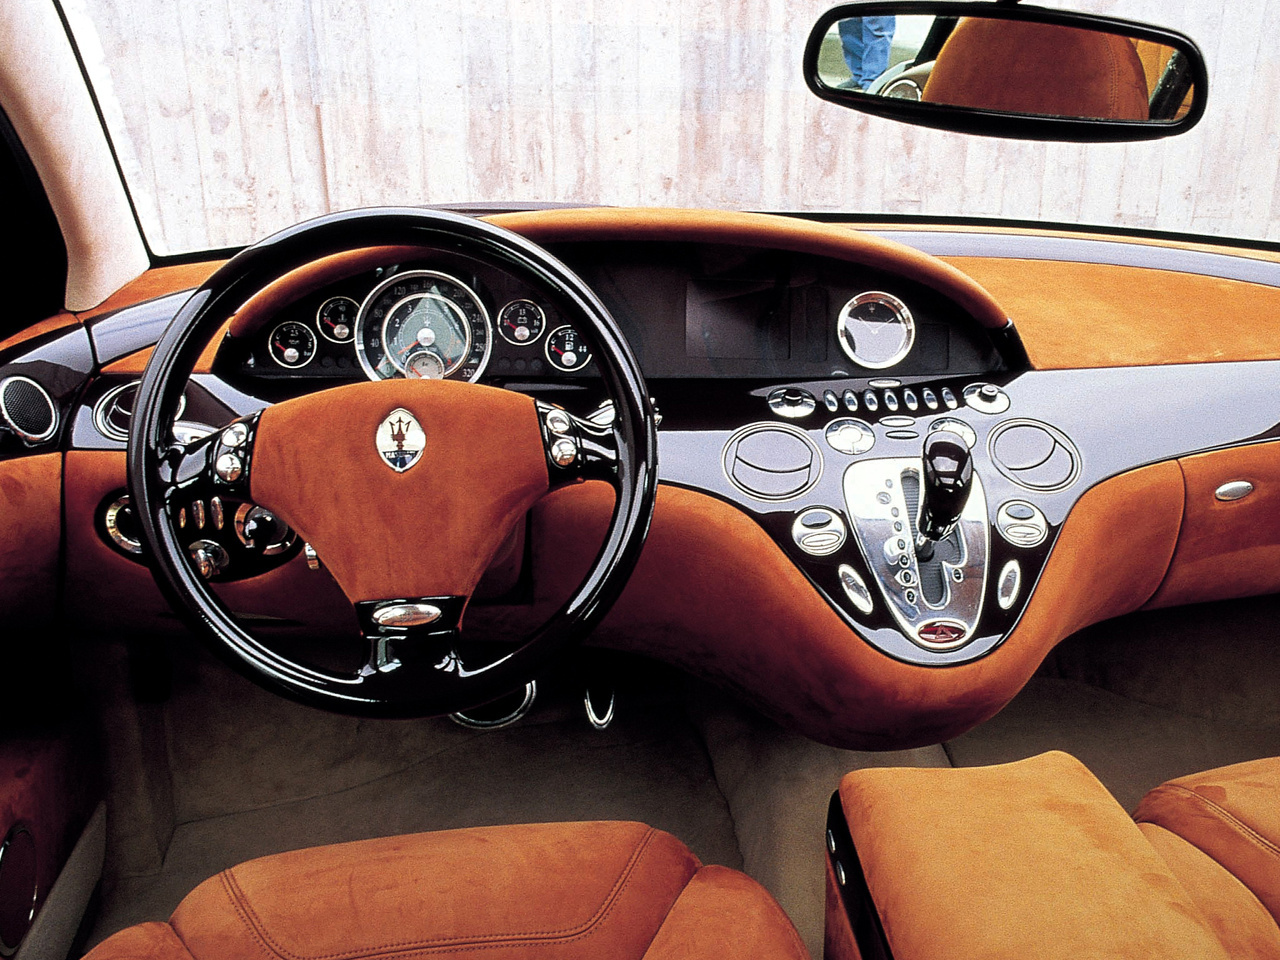 Maserati Buran (ItalDesign), 2000 - Interior